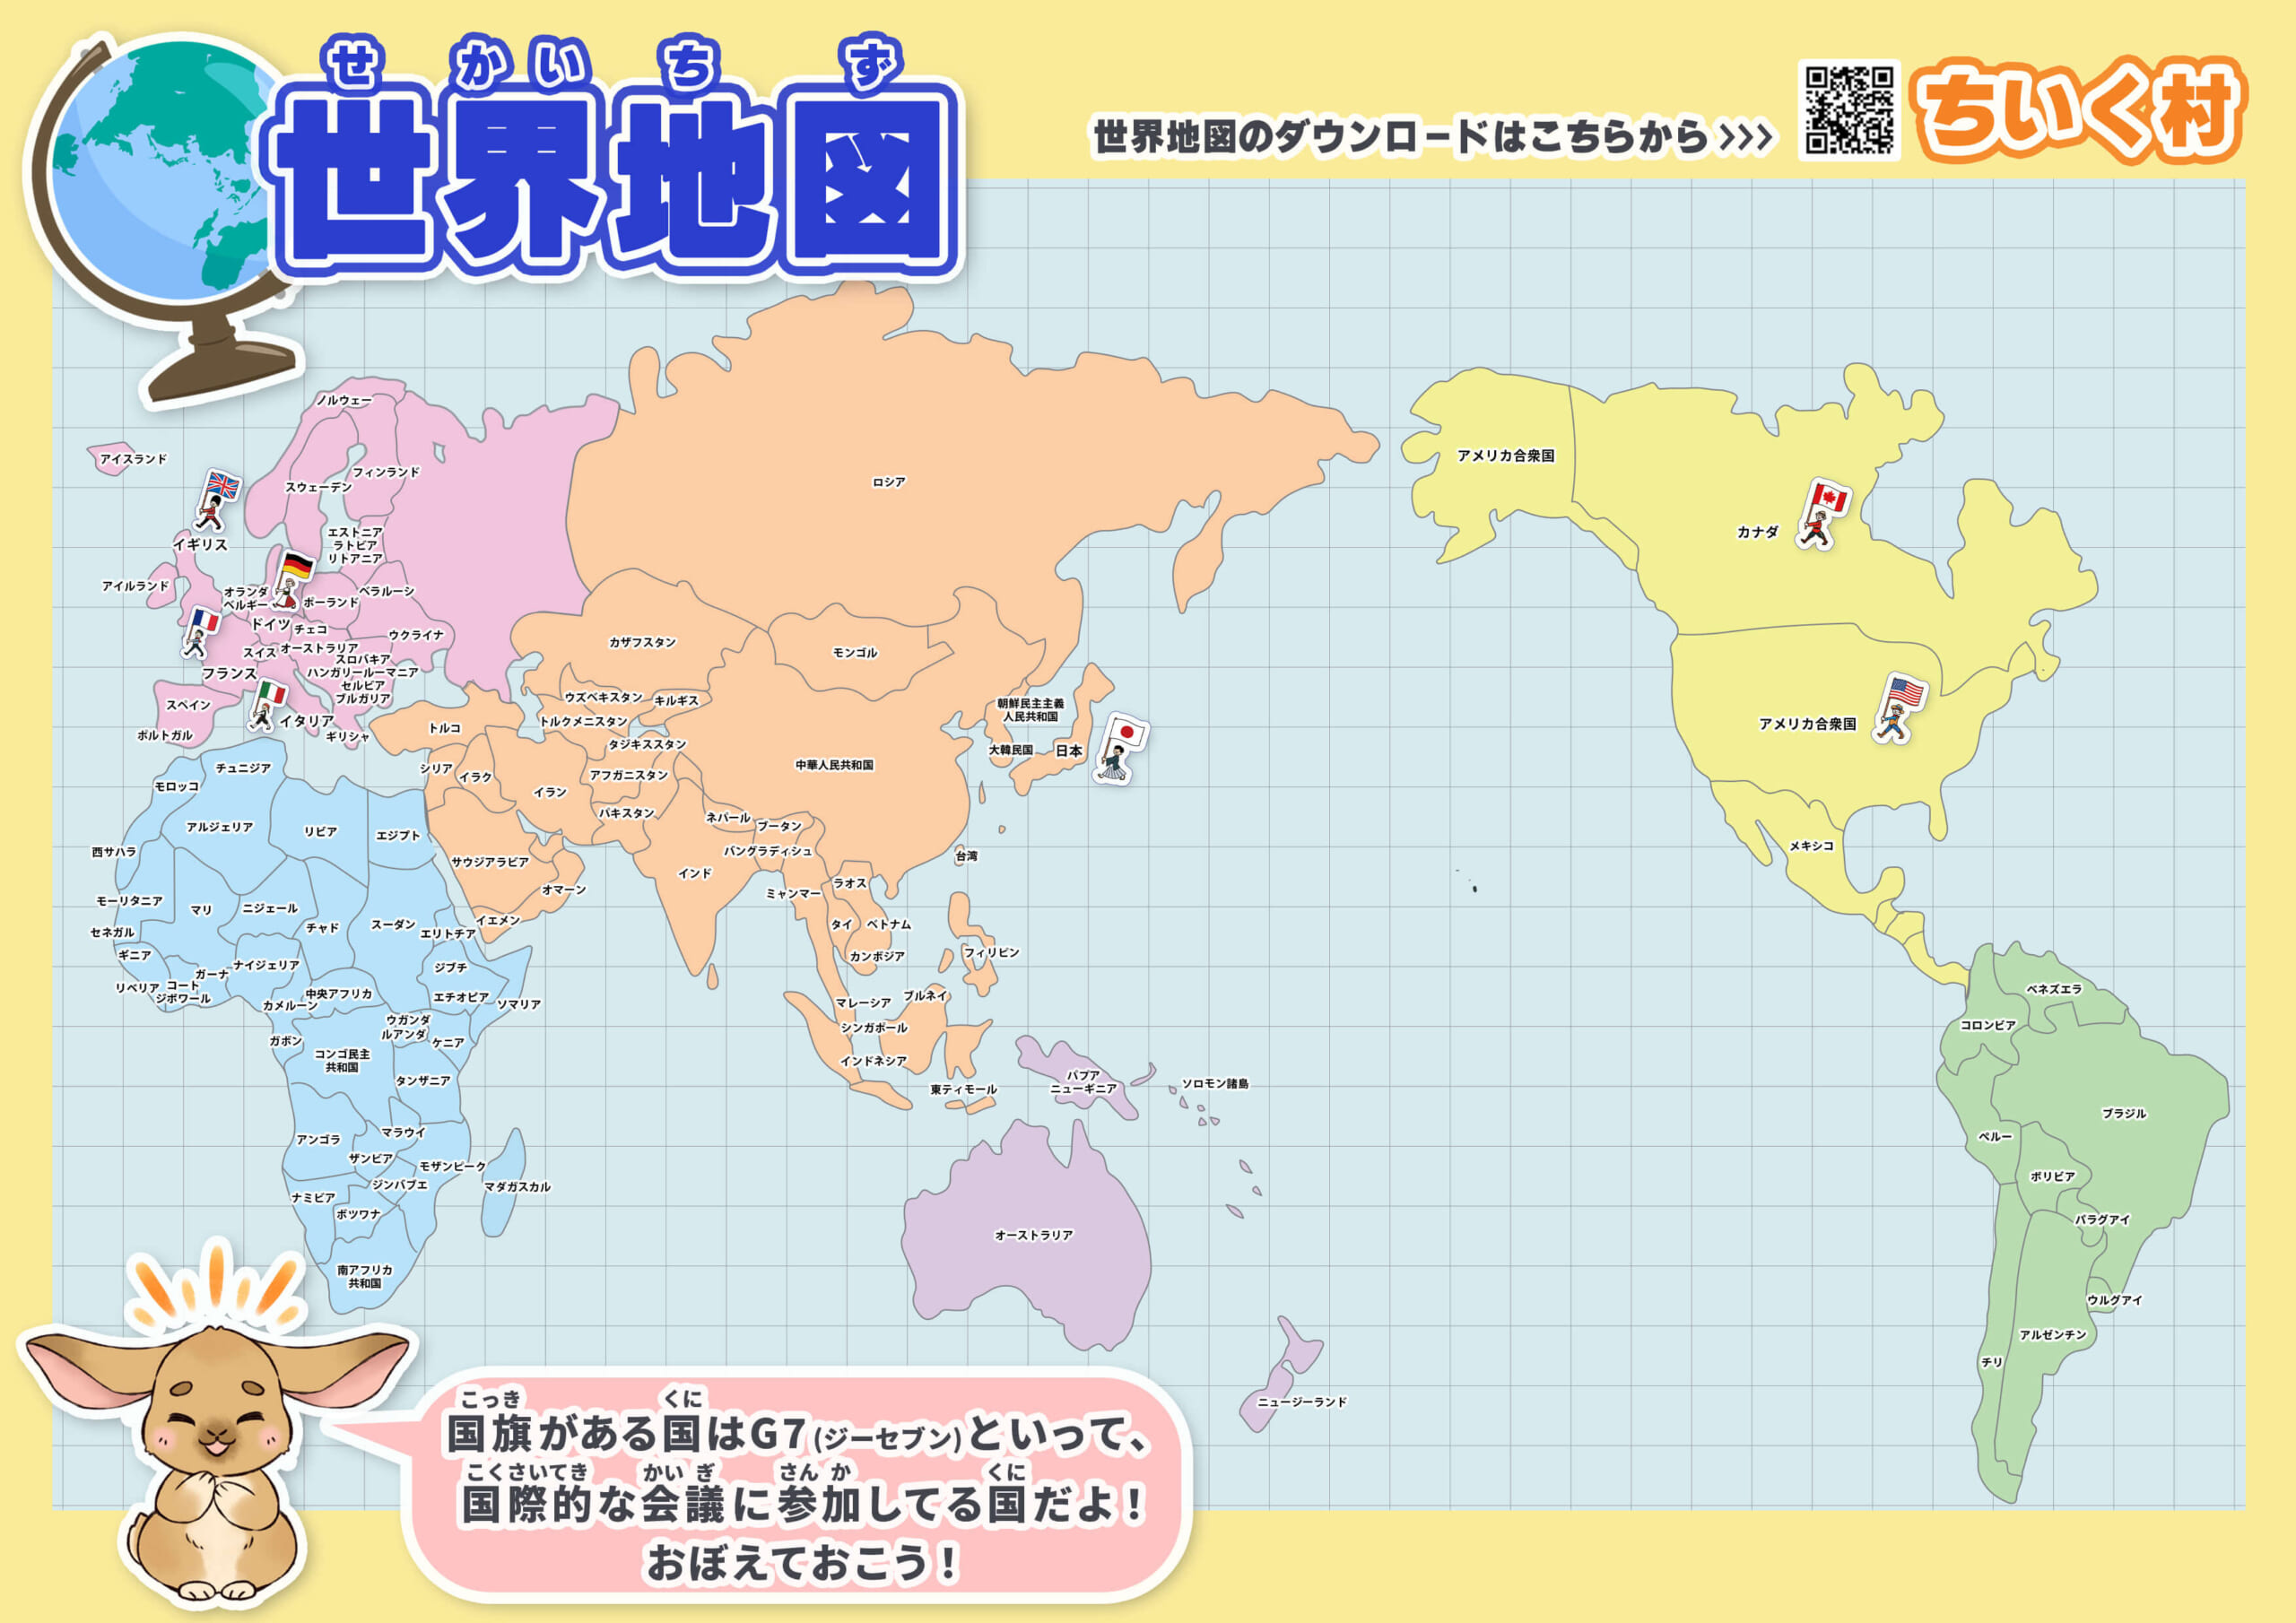 見やすい世界地図画像13種無料ダウンロード 子供でもわかりやすい国名入り高画質世界地図 ちいく村 幼児向け通信教育を比較するブログ